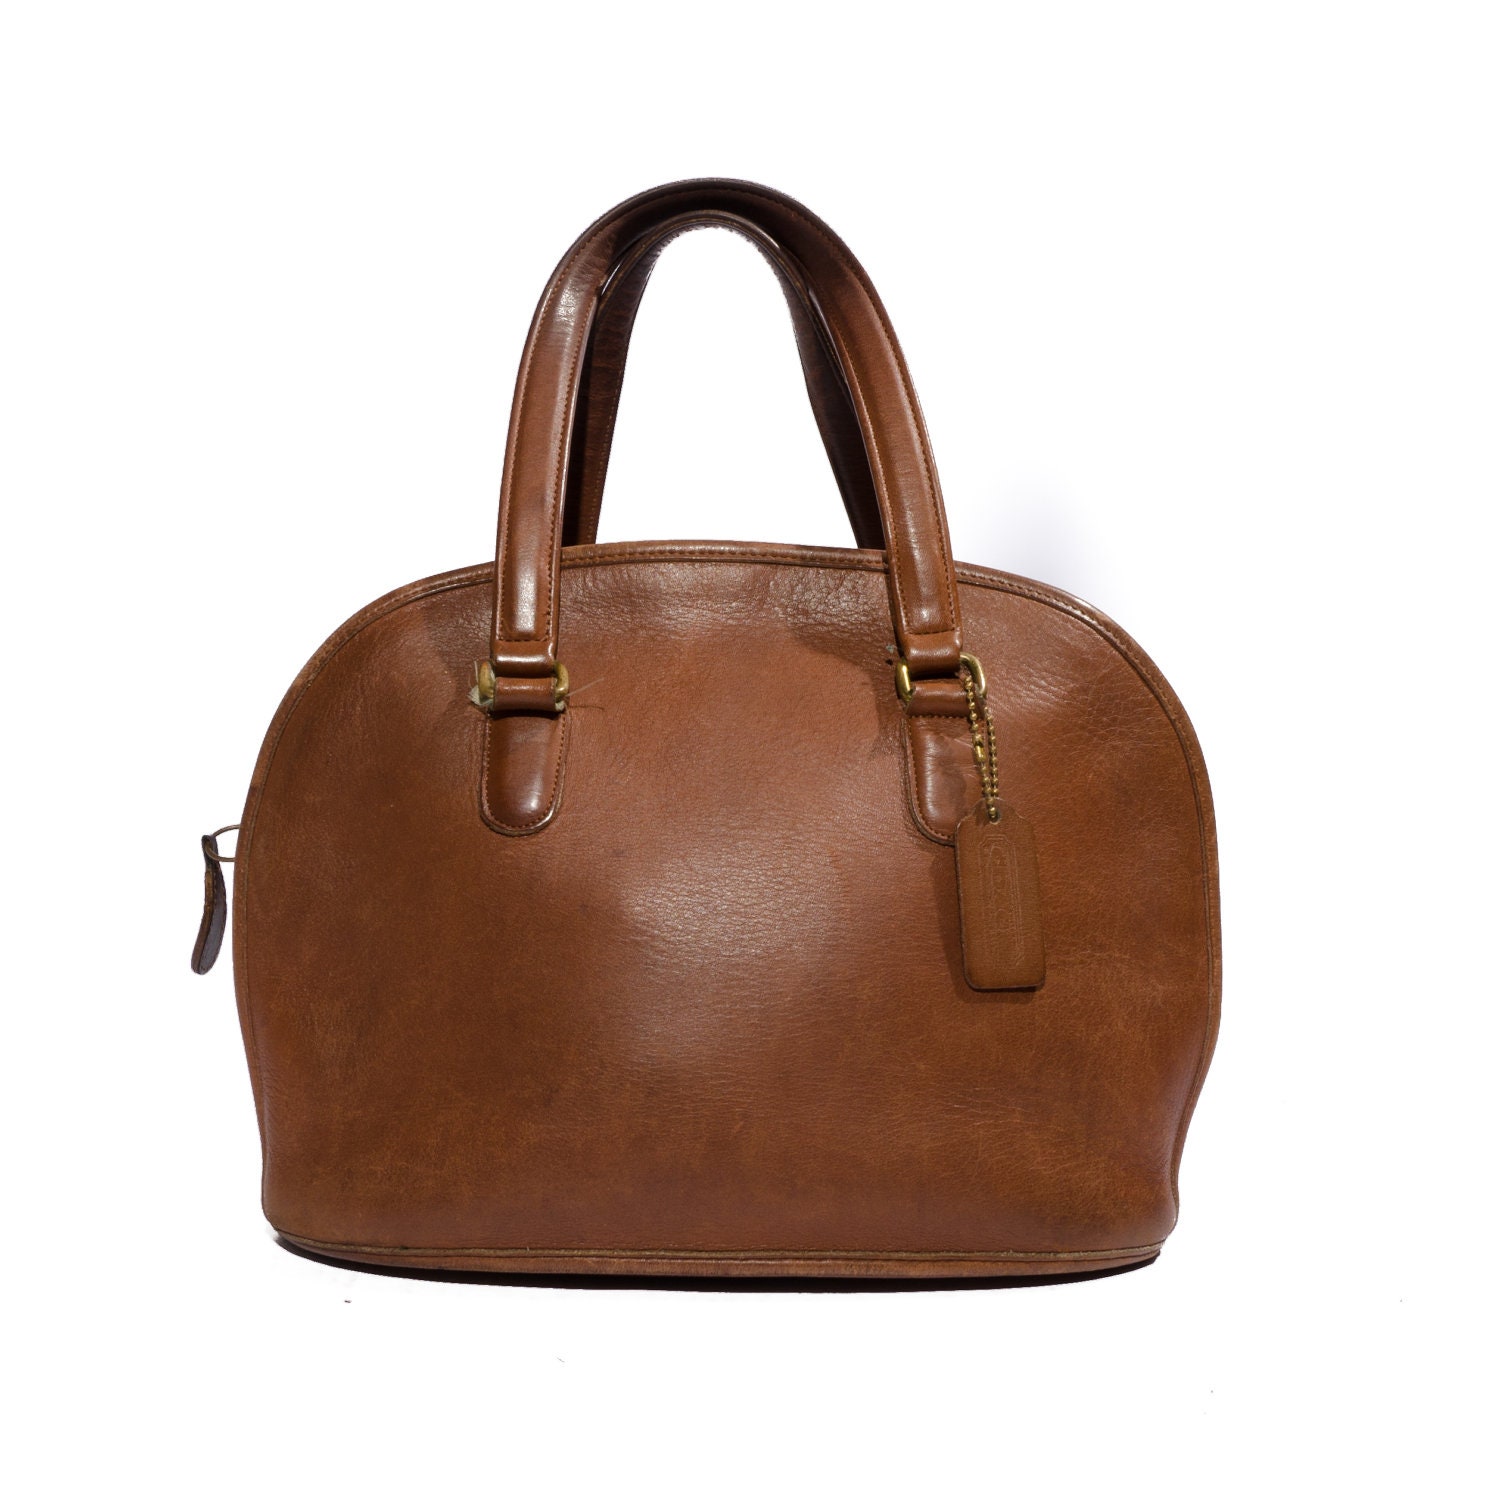 Vintage COACH Handbag  Satchel Brown Leather Bag  Tote  Evening Bag